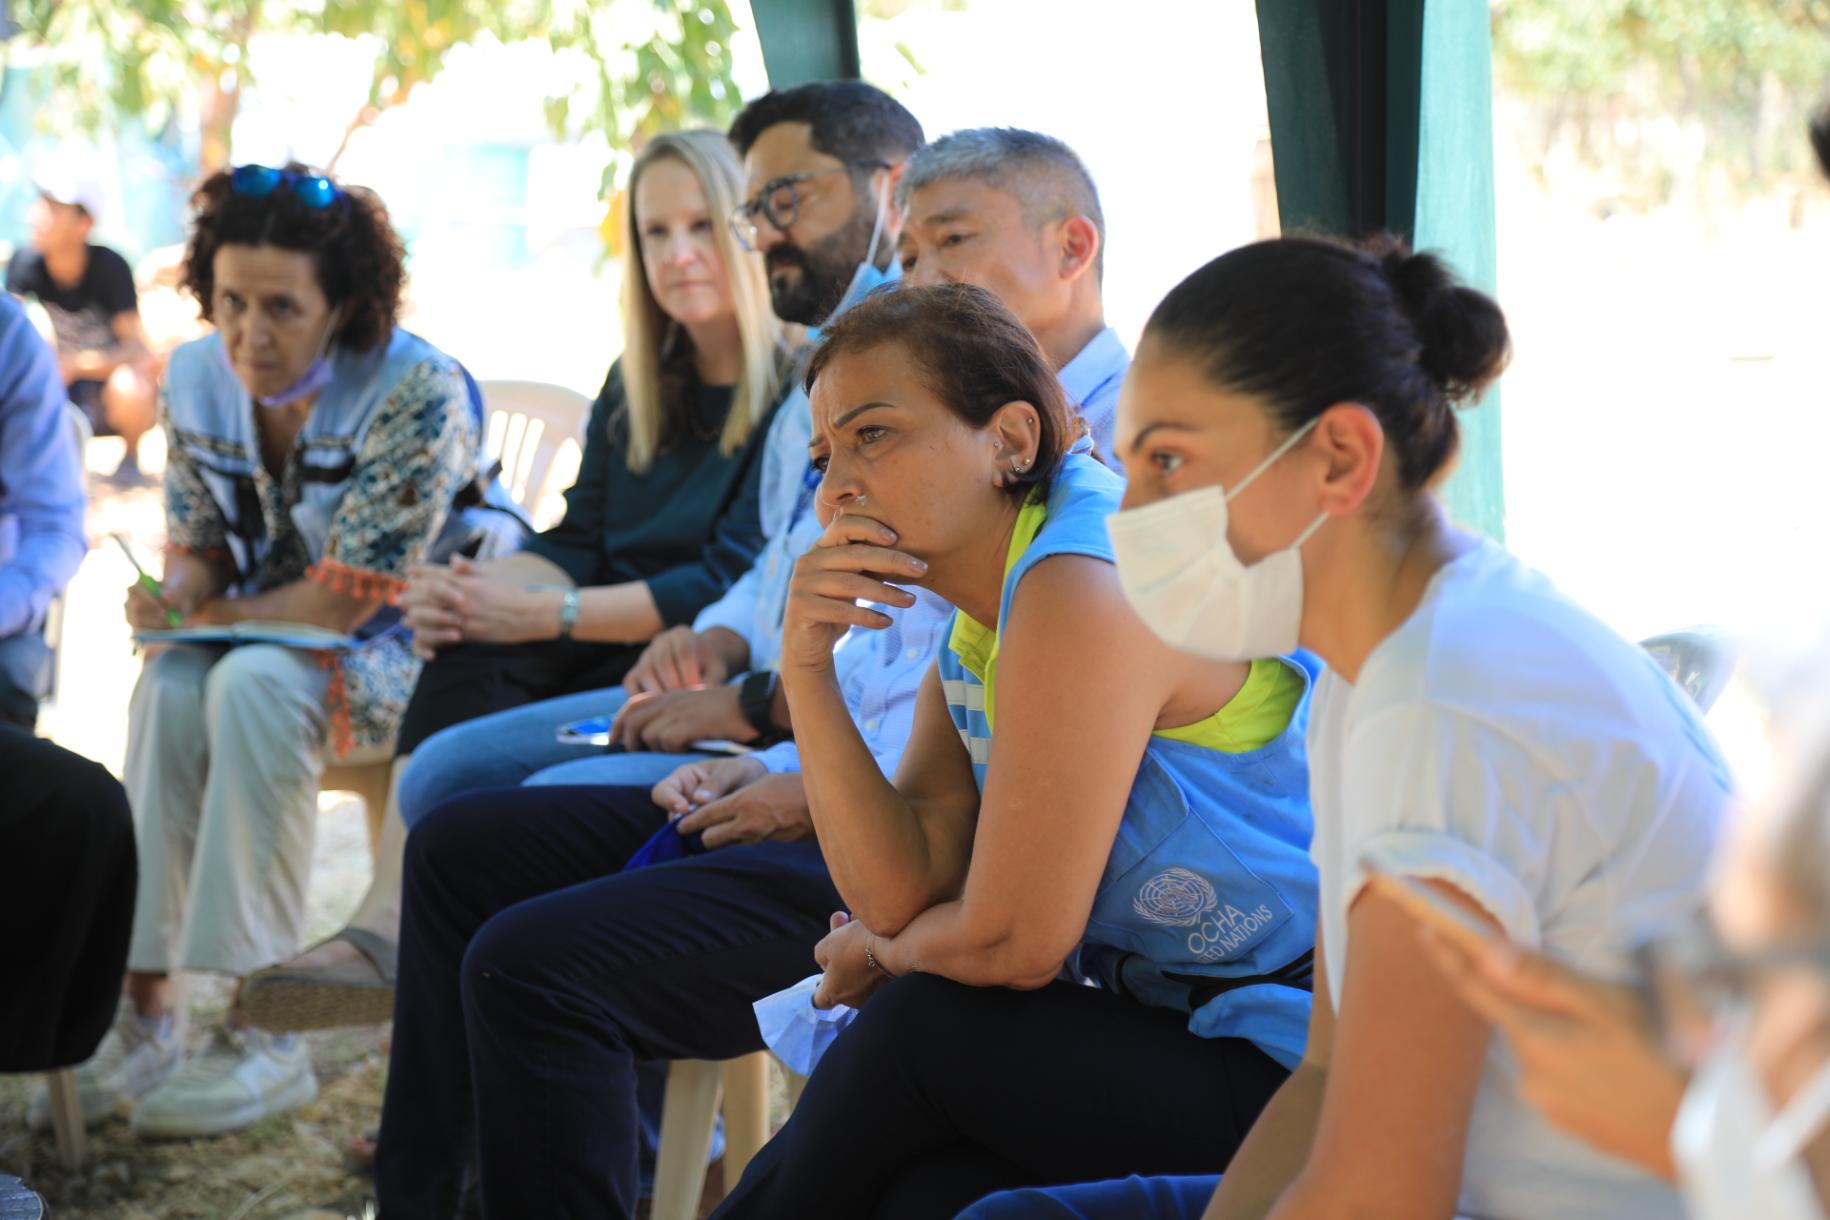 La Coordonnatrice résidente et Coordonnatrice humanitaire des Nations Unies au Liban, Najat Rochdi est entourée de plusieurs personnes et écoute attentivement les propos d’un interlocuteur assis devant elle, hors champ.